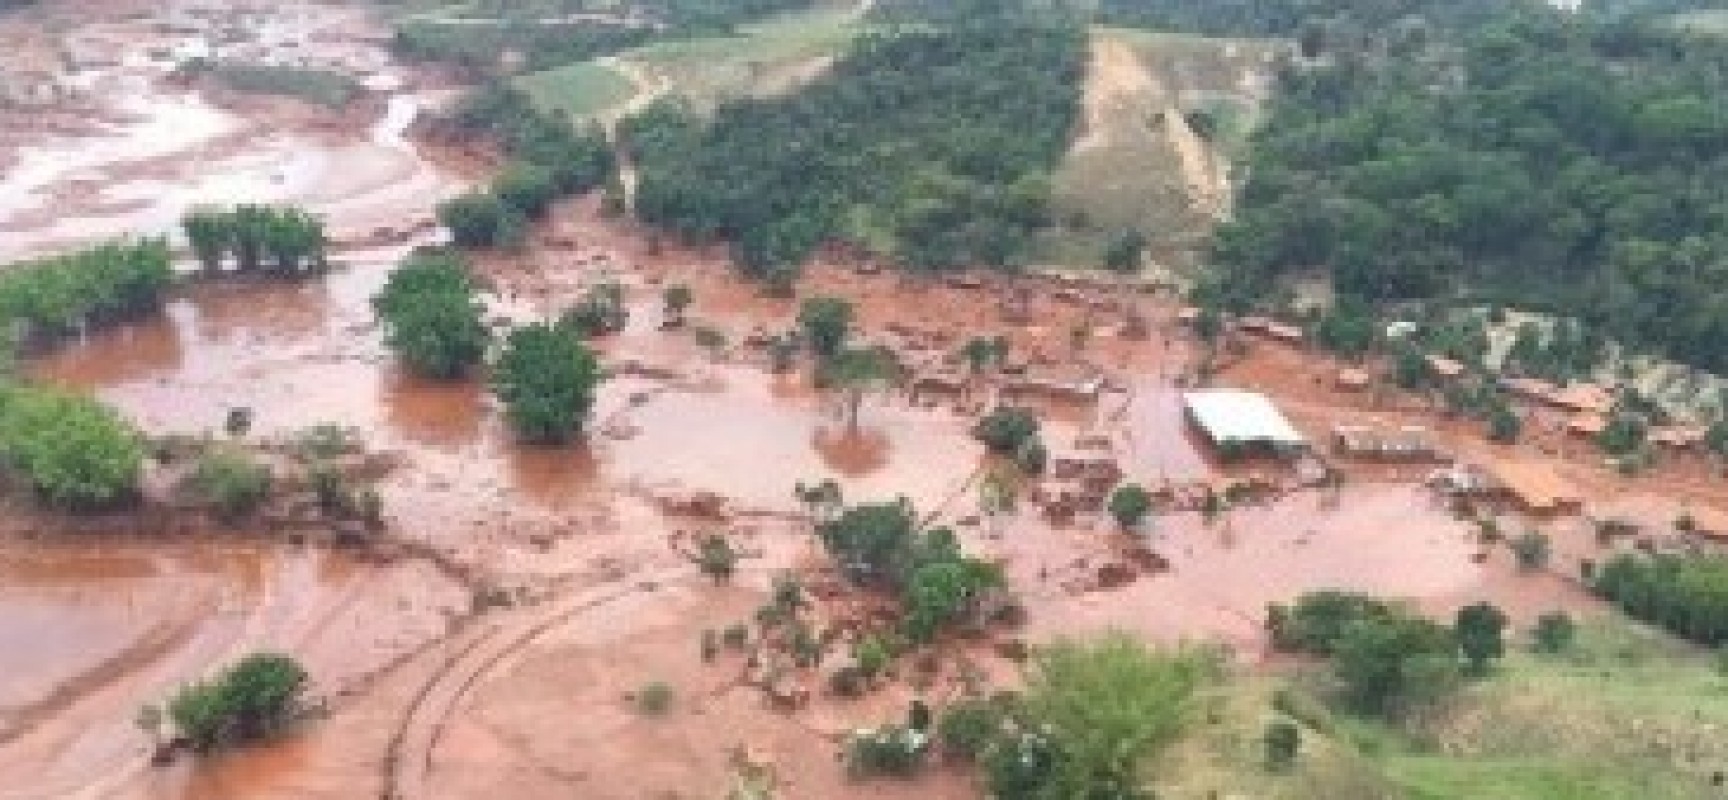 Governo conferiu licença ambiental para reconstruir Bento Rodrigues, em Mariana